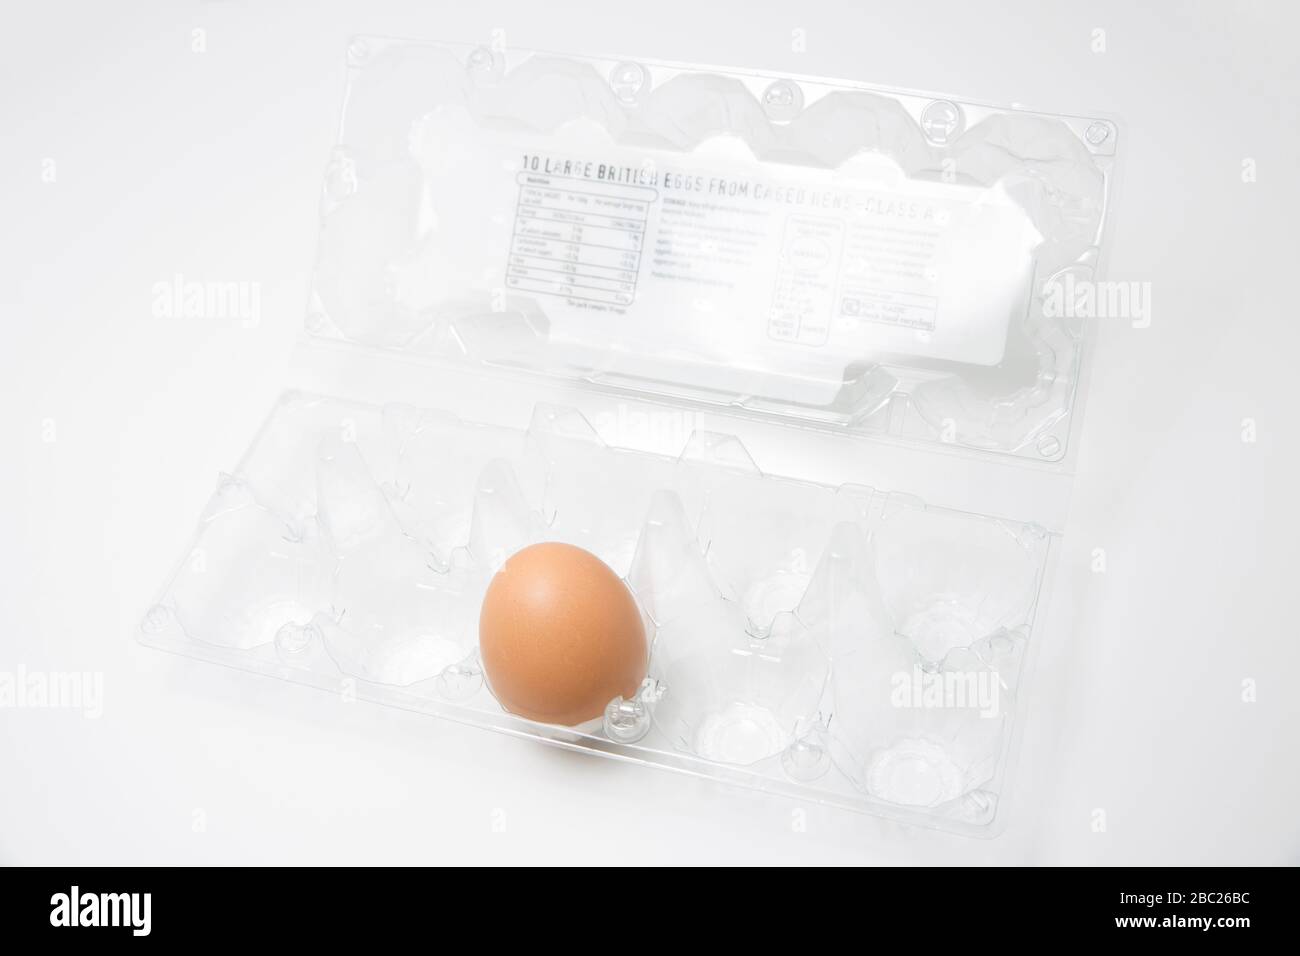 Un solo huevo sin cocer de una gallina enjaulada en una caja de plástico. Los huevos fueron uno de los varios artículos que se agotaron rápidamente durante el brote de Coronavirus. Sí Foto de stock